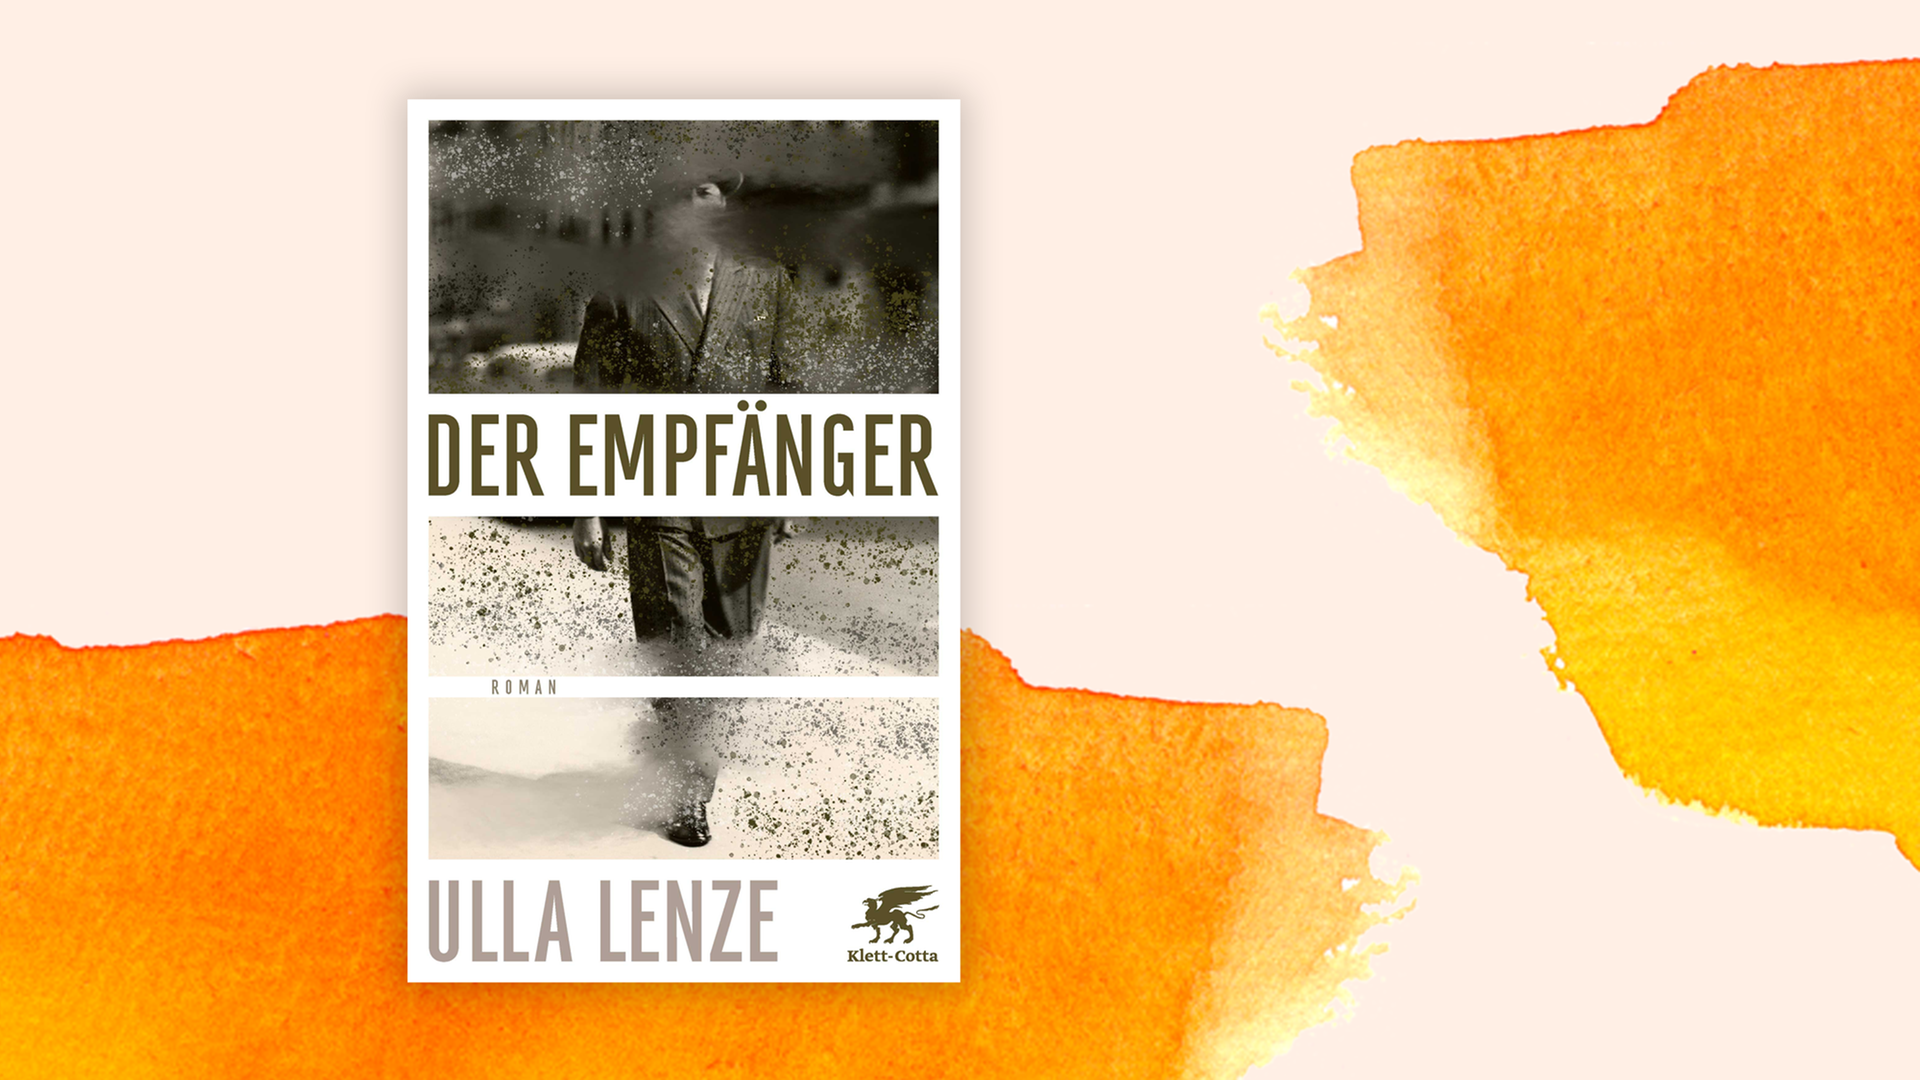 Zu sehen ist das Cover des Buches "Der Empfänger" von Ulla Lenze.